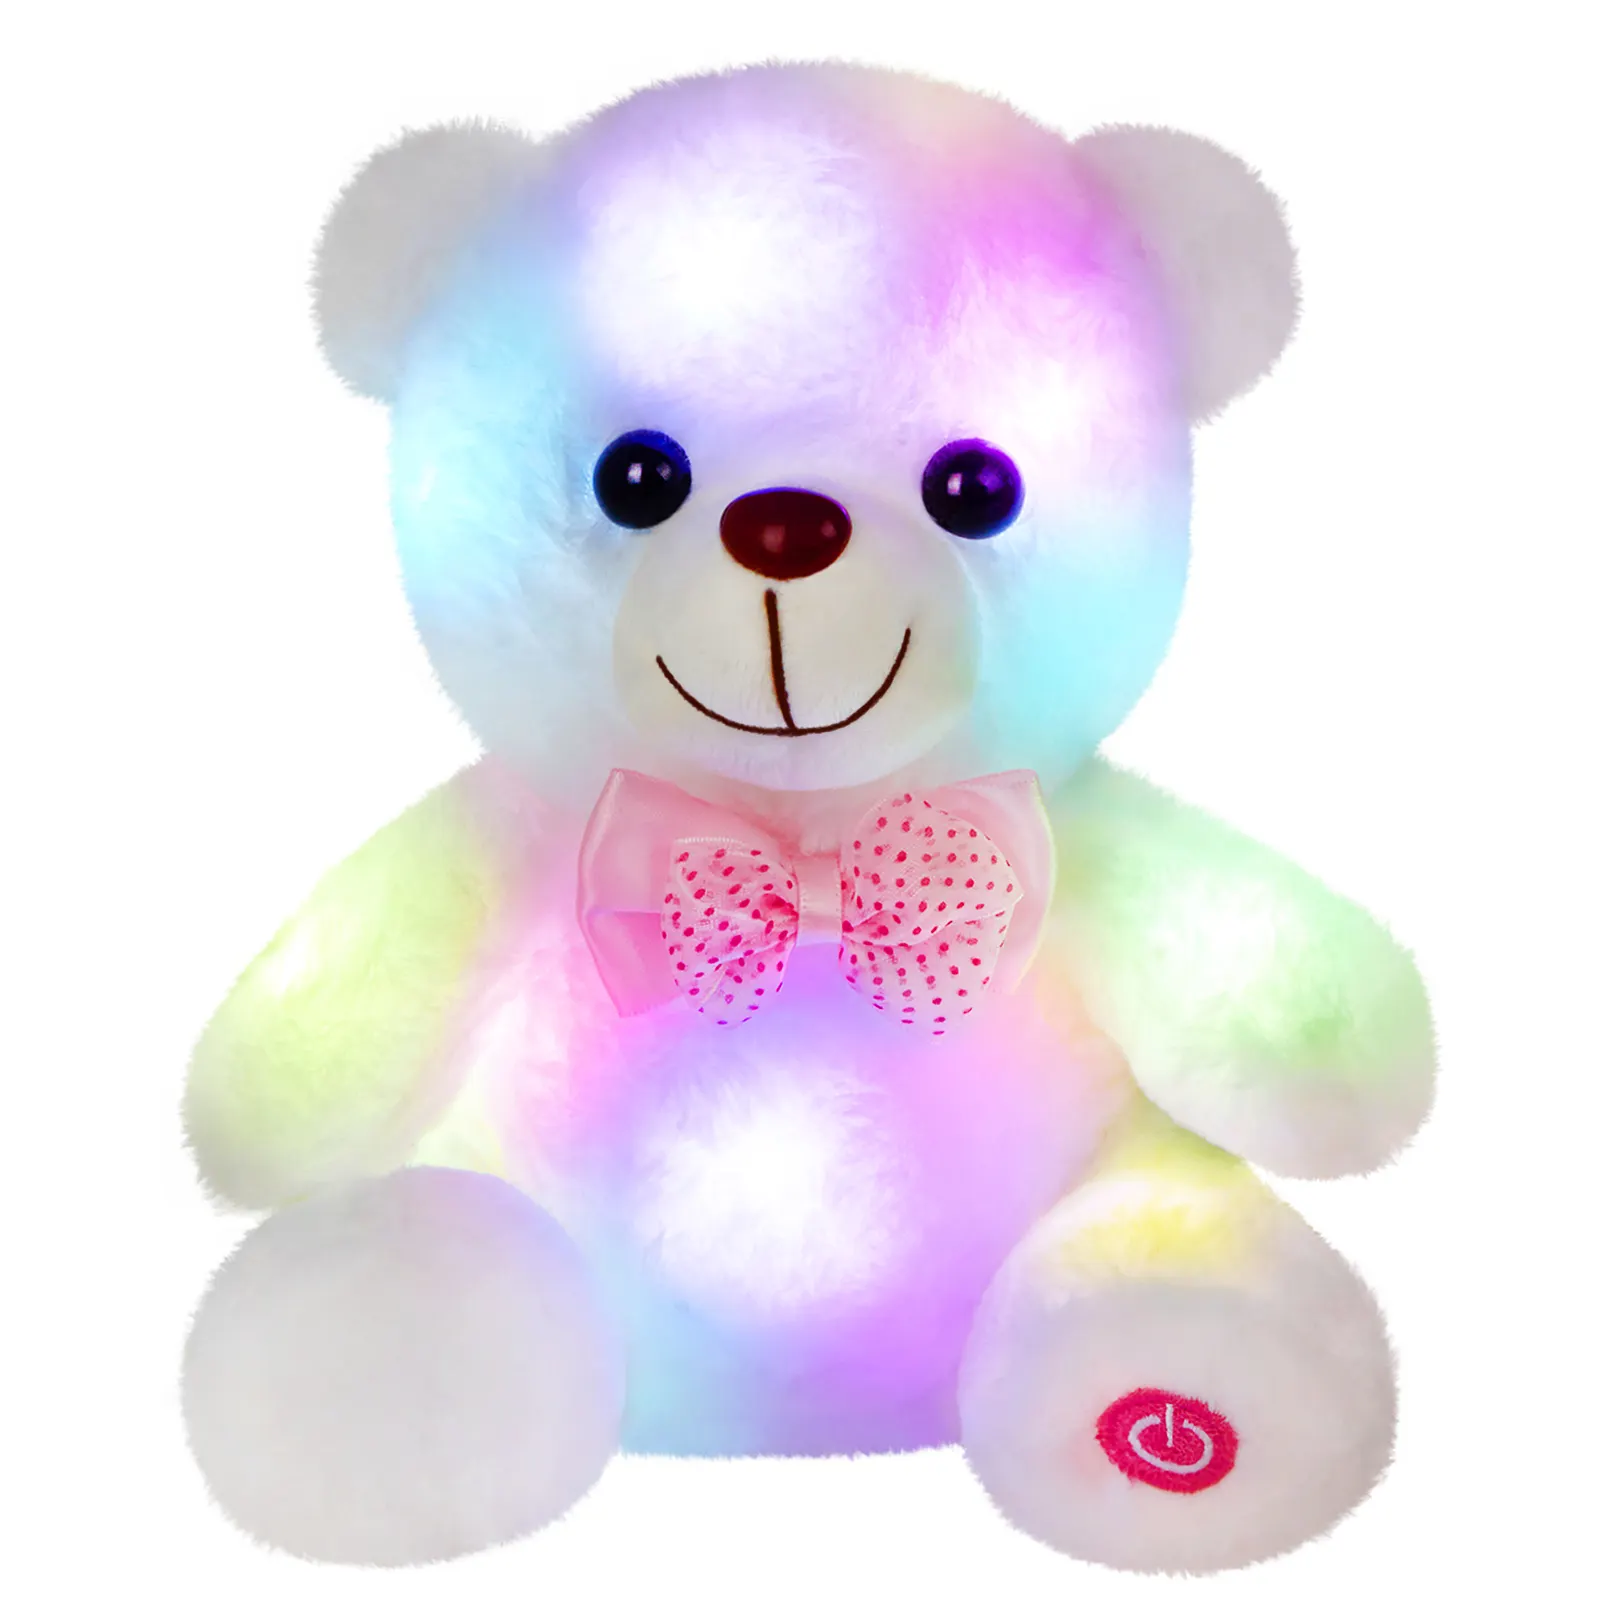 המחיר הטוב ביותר אור קישוח דוב פרווה רך לילה מתנות צעצוע לילה ליום הולדת יום האהבה לילדים